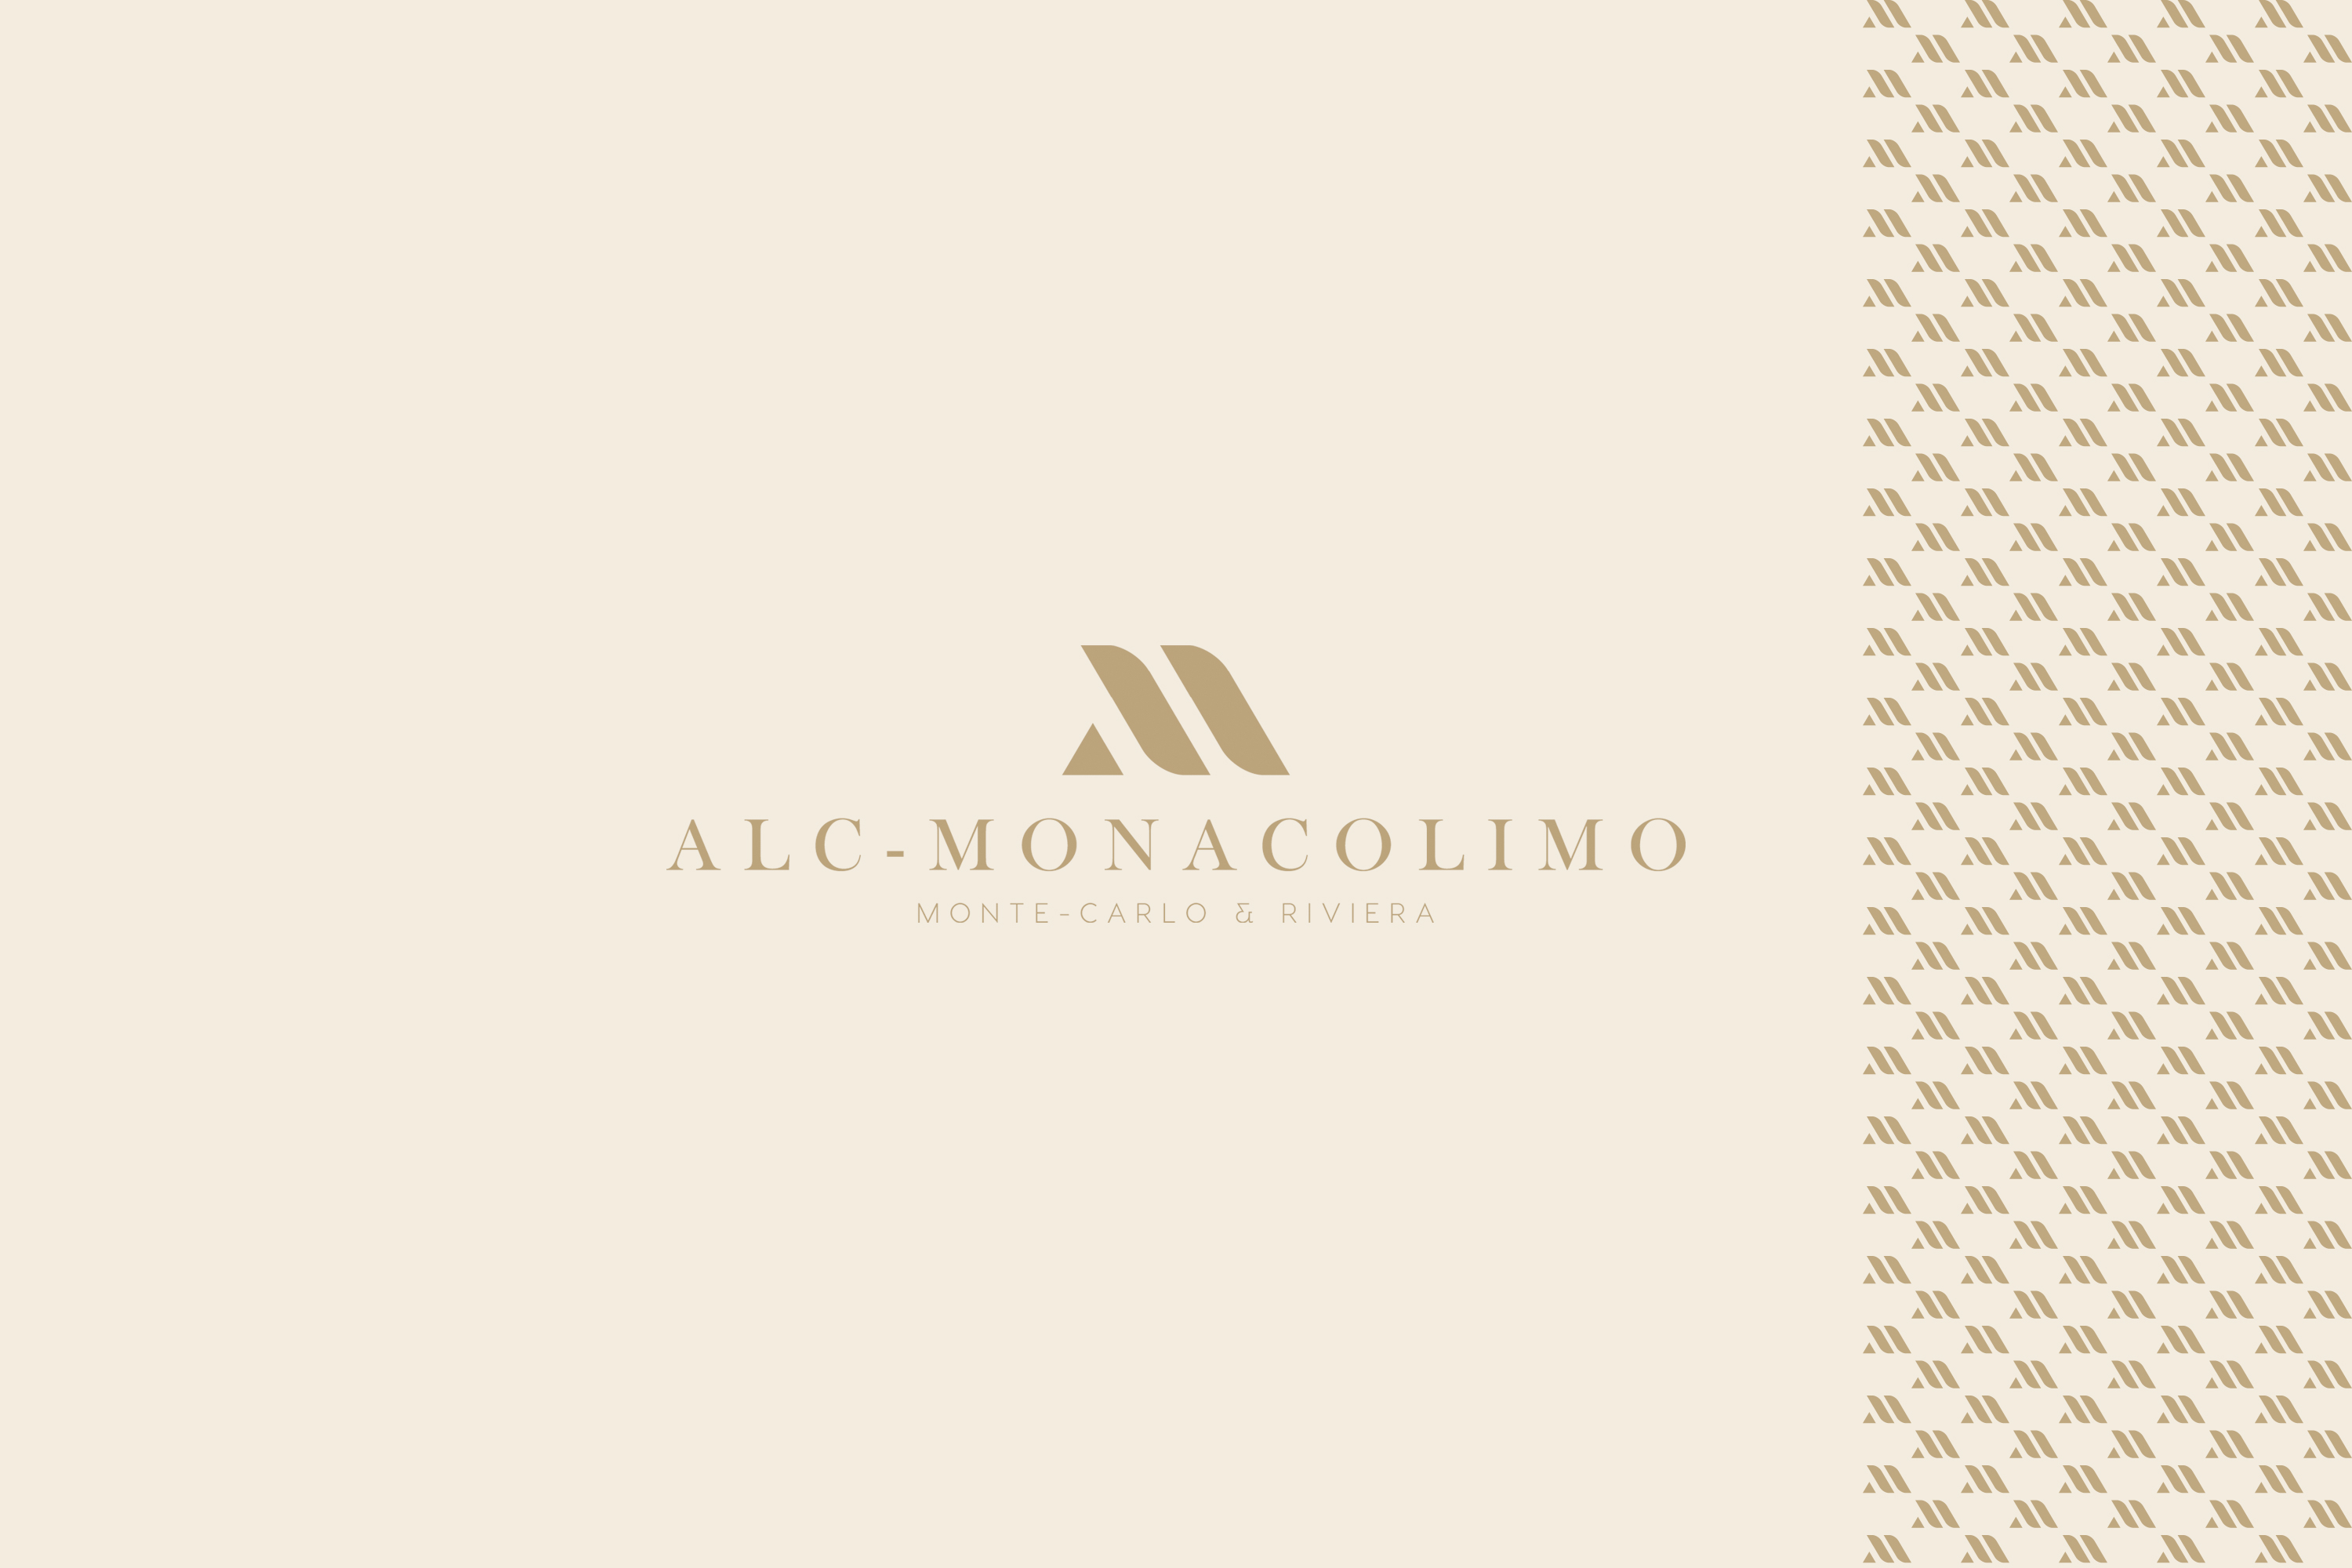 alc-monacolimo-01